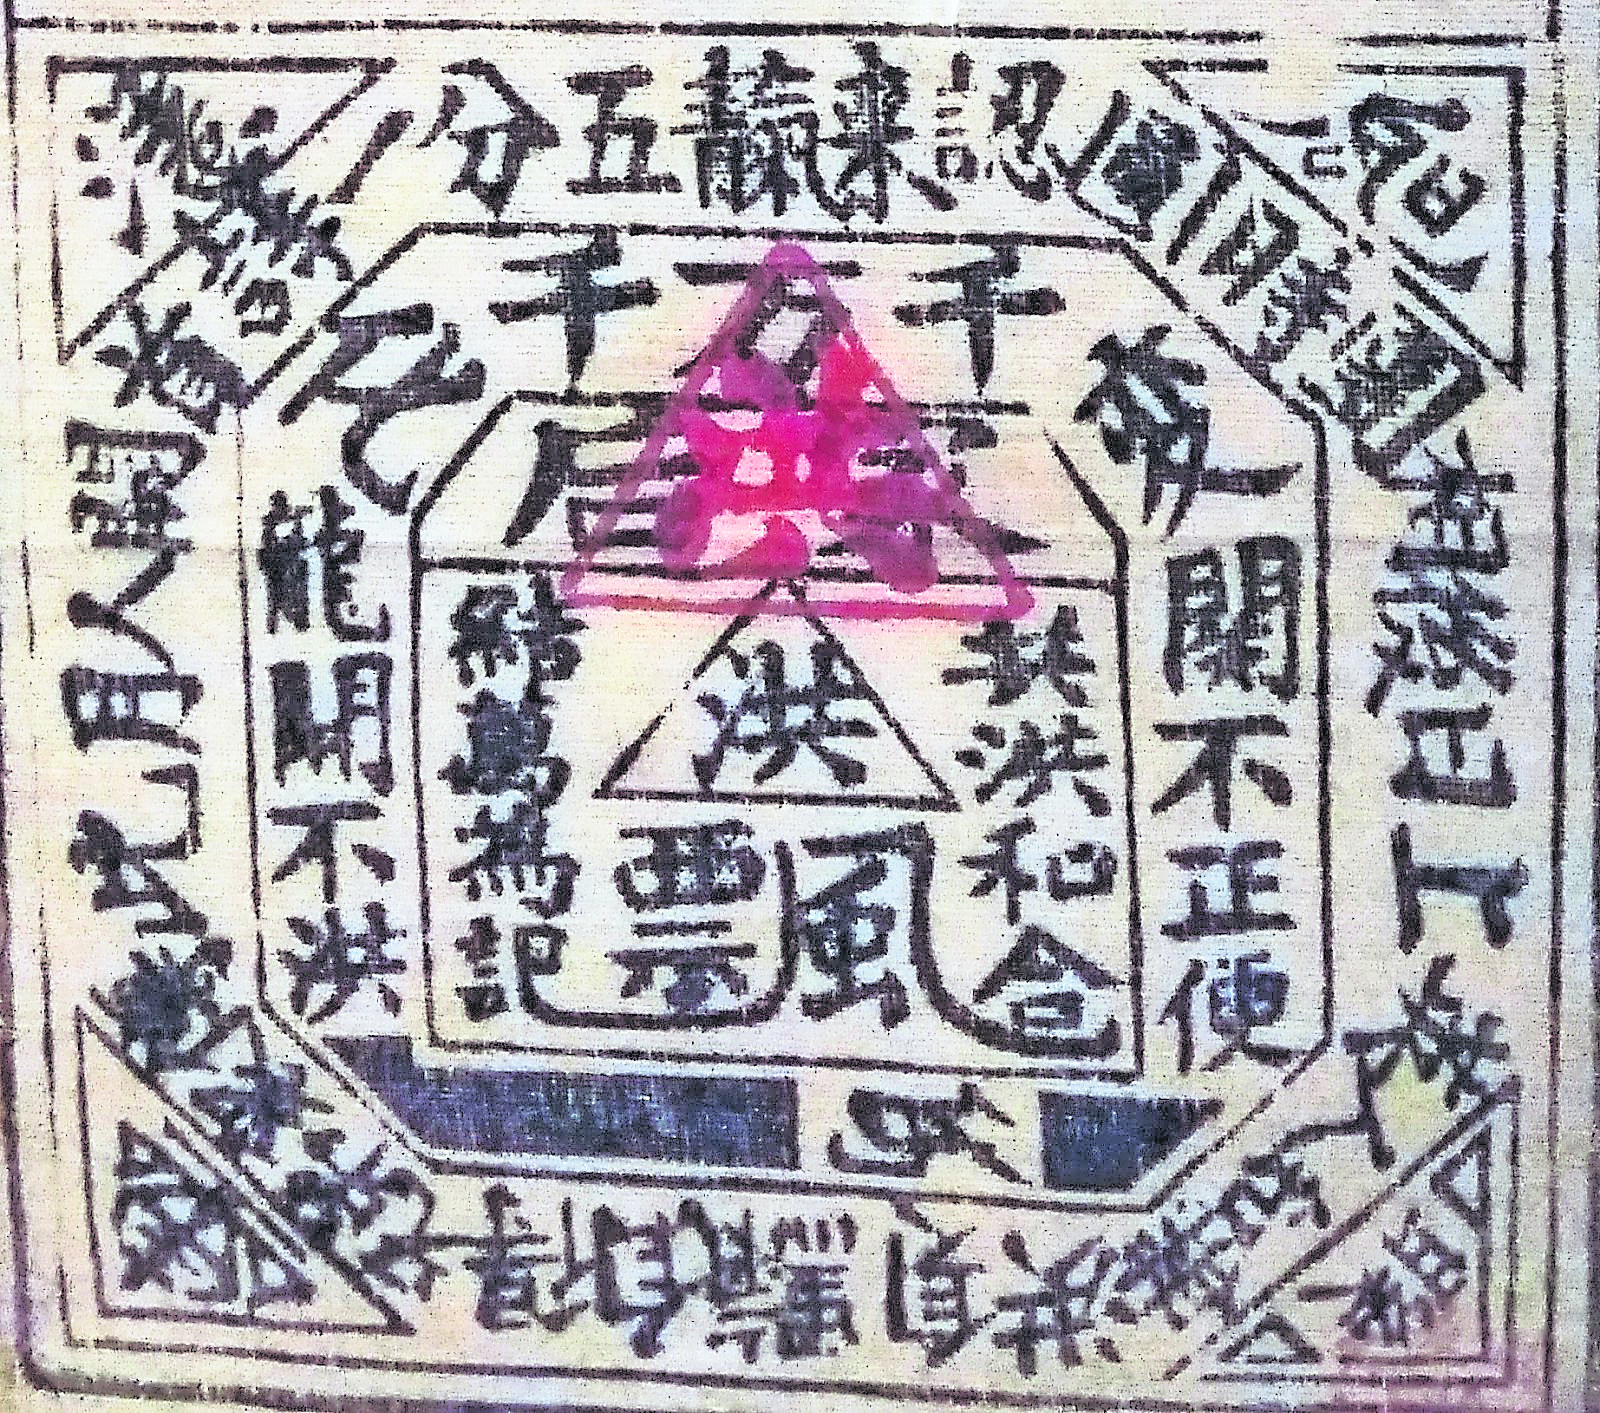 义兴公司的八卦图，八卦内圈的“洪”由三角形围起来，喻意“三合”，“洪”乃洪门，因此洪门会、天地会、三合会实为一家。